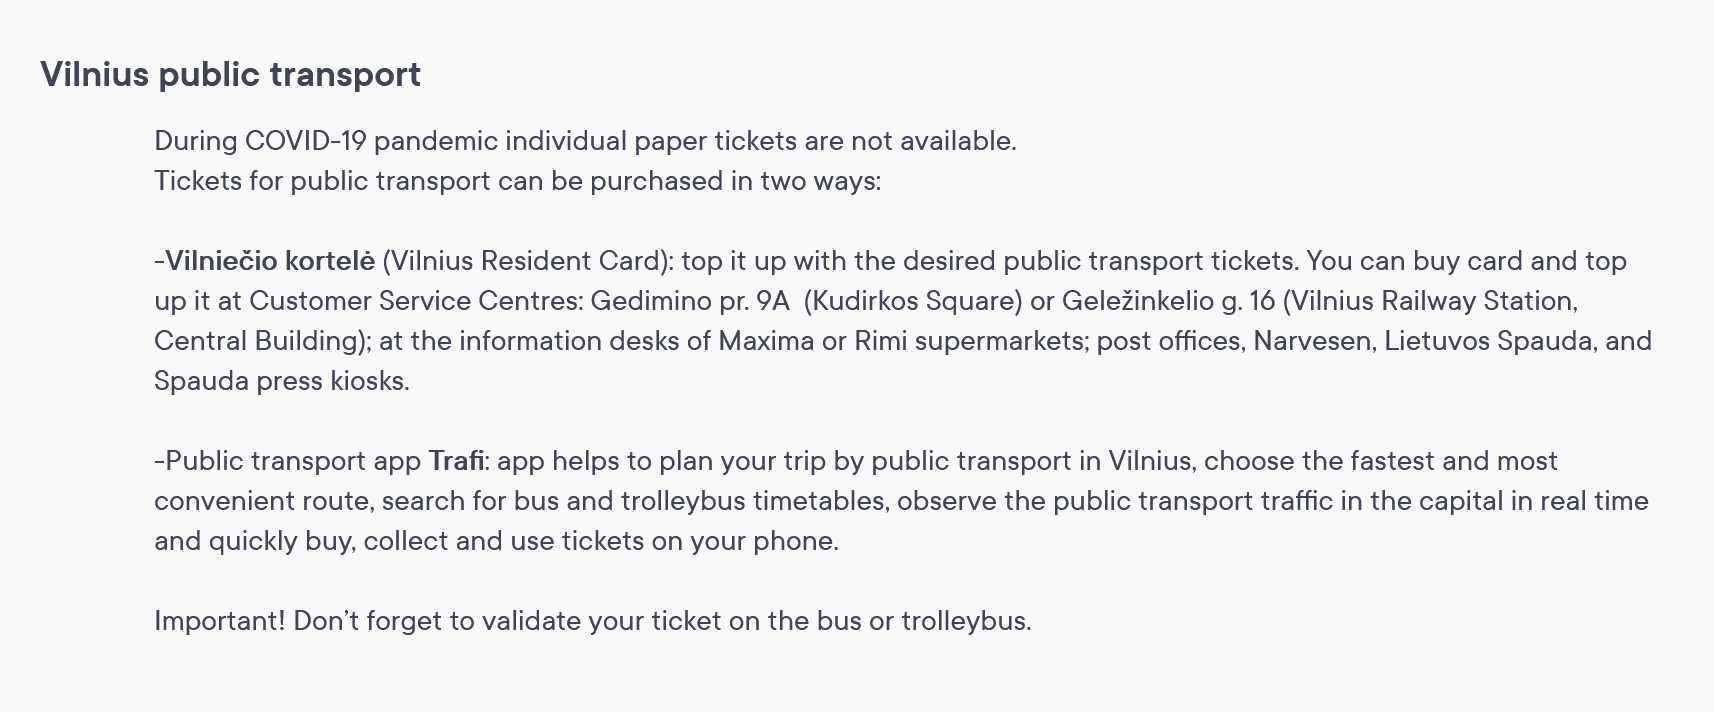 Информация об оплате проезда в общественном транспорте Вильнюса. Источник: govilnius.lt